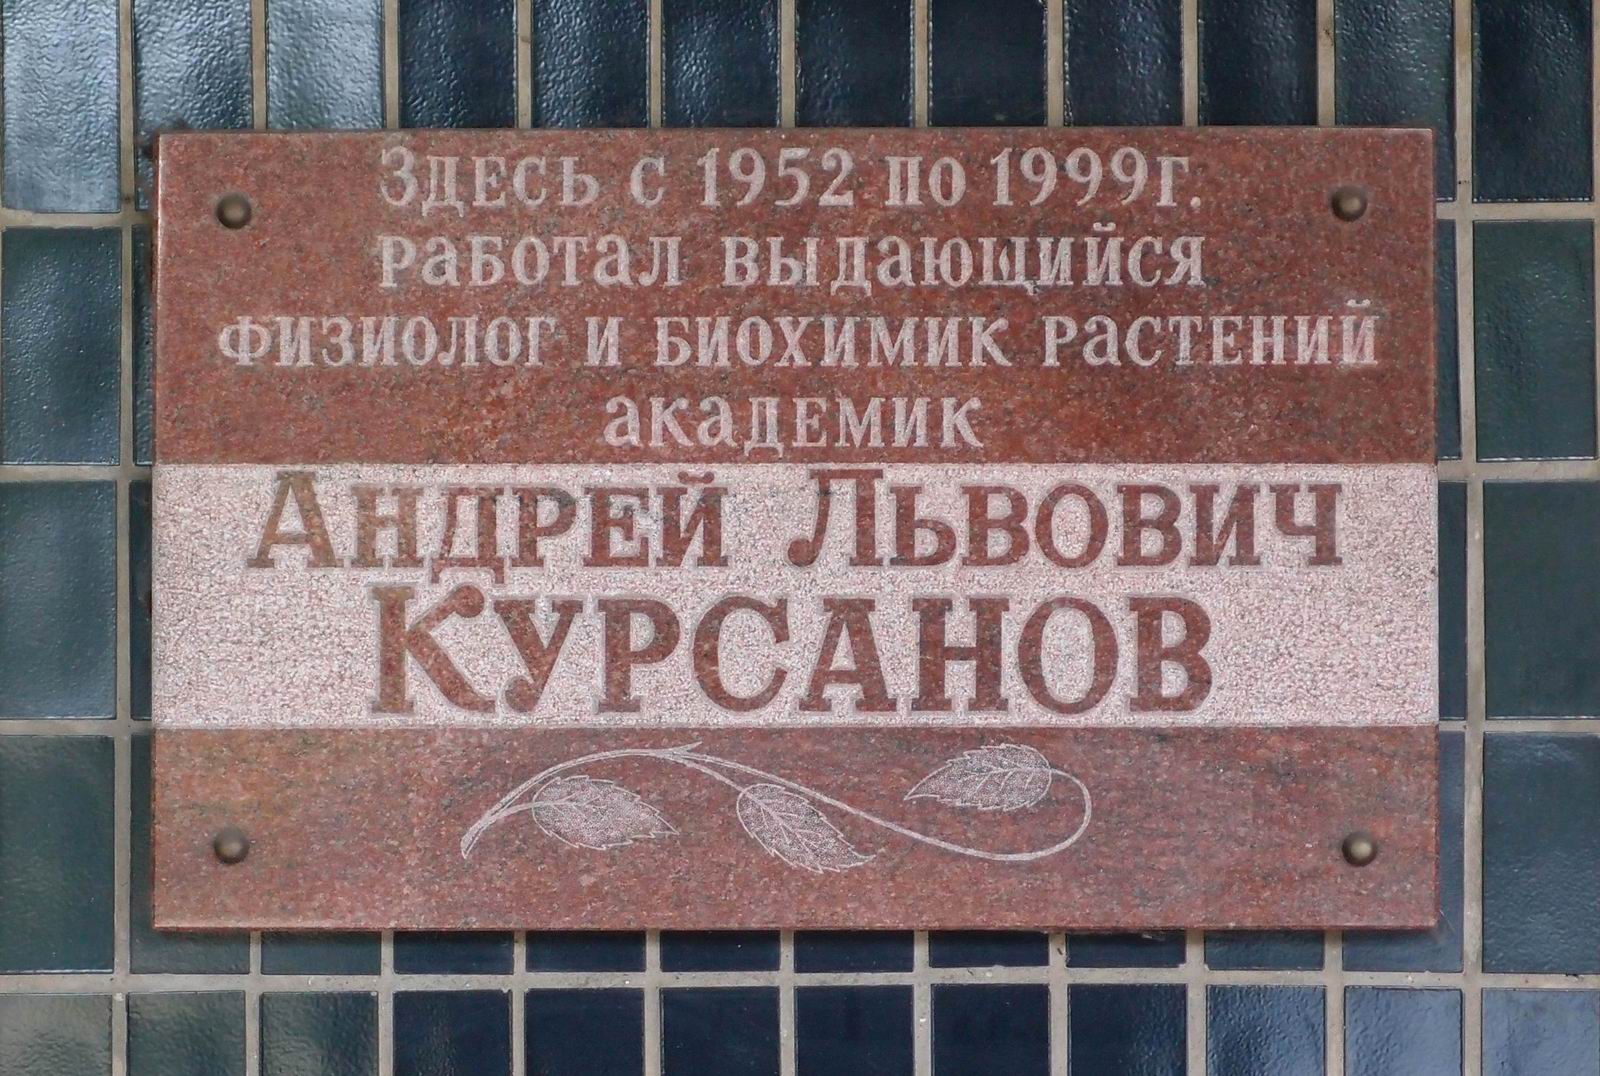 Мемориальная доска Курсанову А.Л. (1902–1999), на Ботанической улице, дом 35.